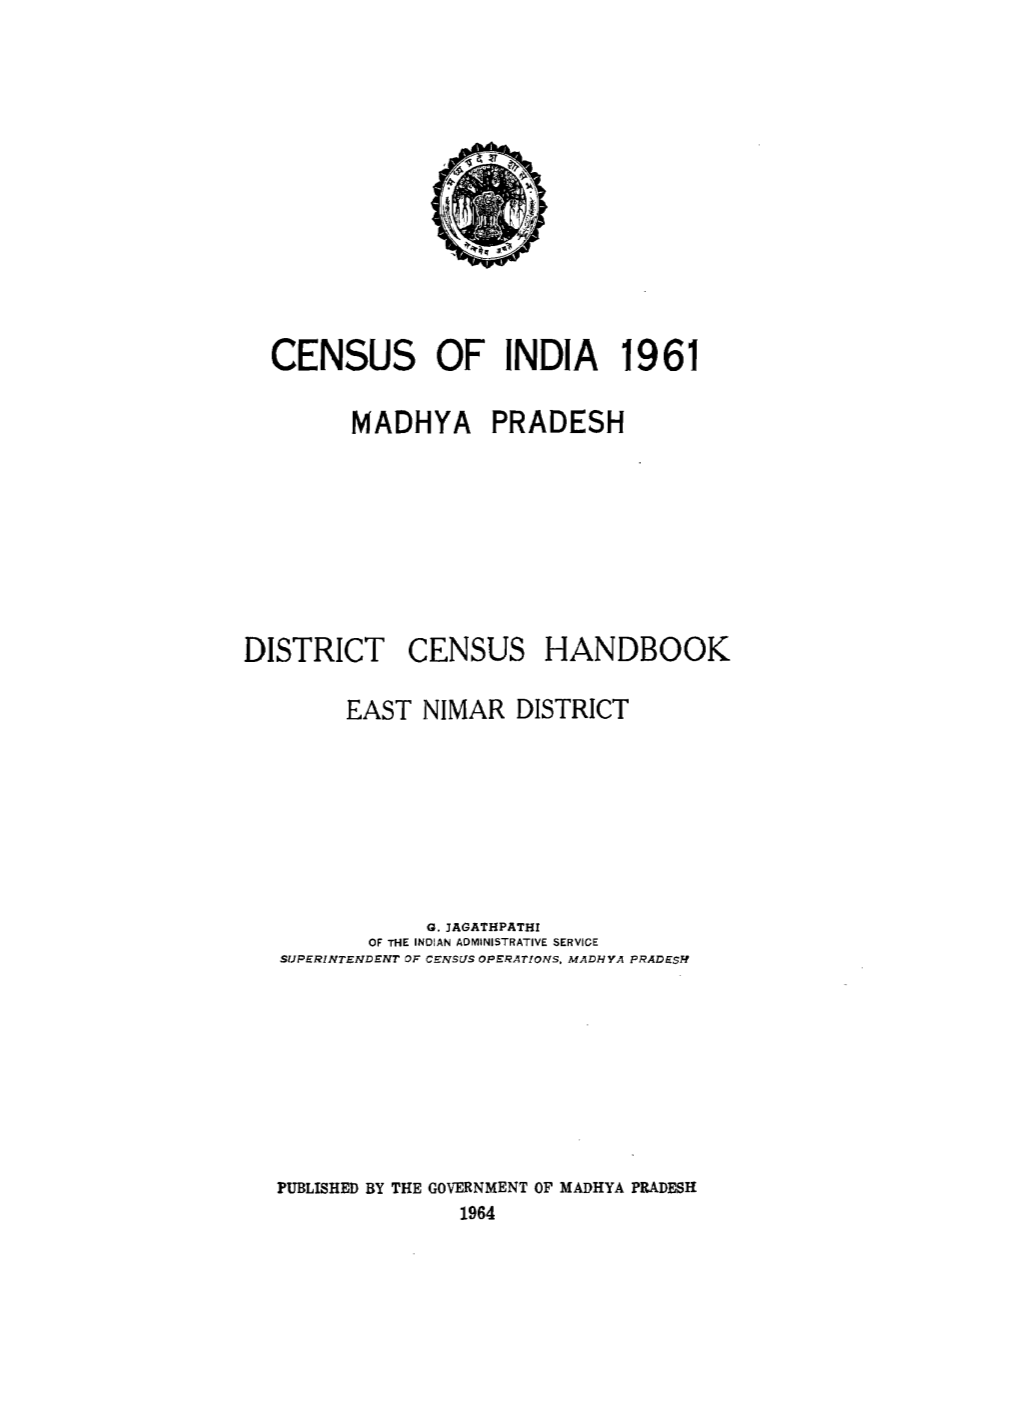 District Census Handbook, East Nimar